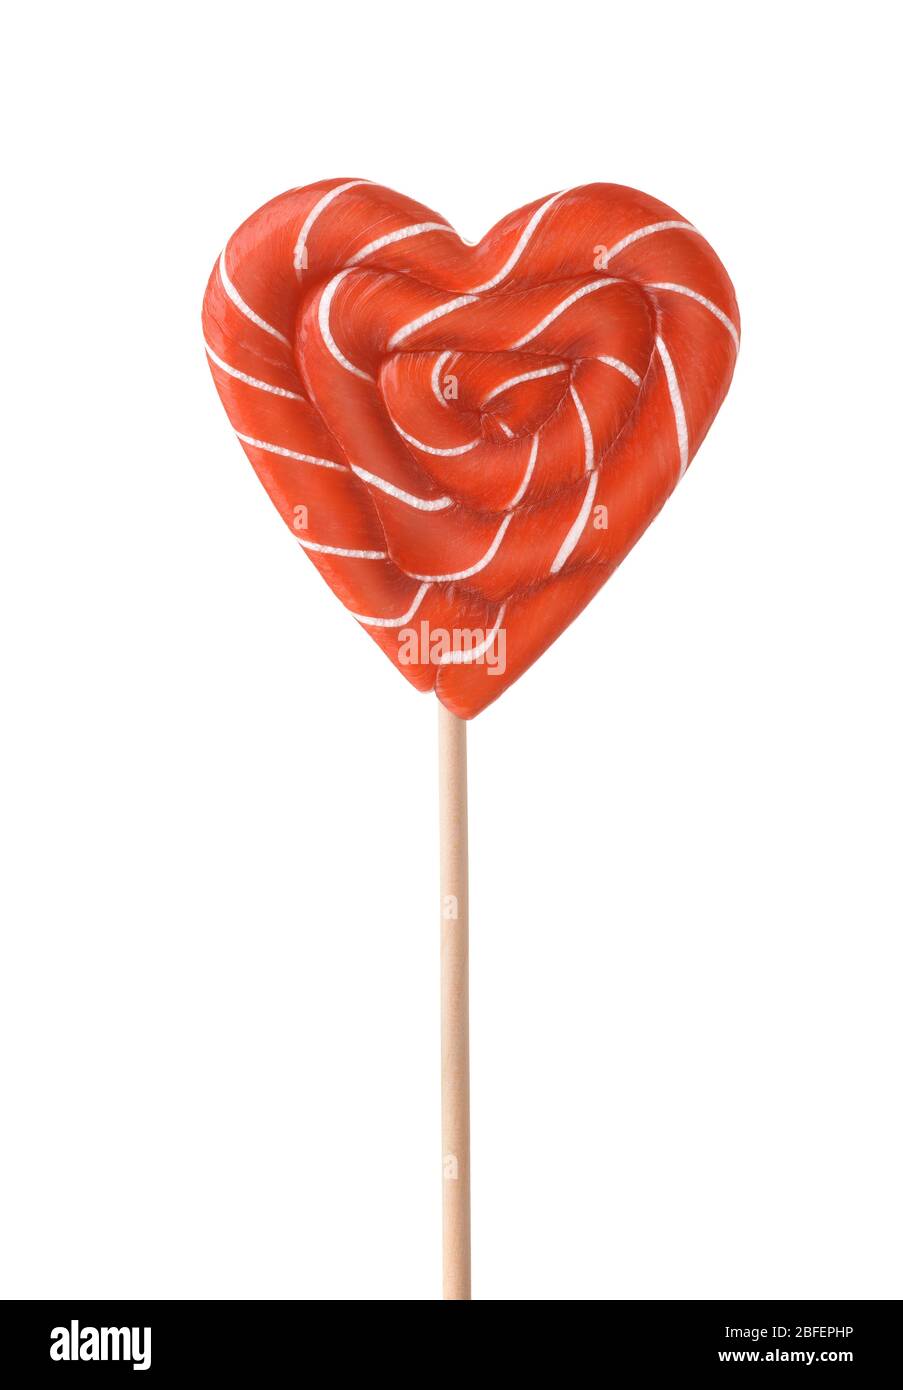 Vista frontale della caramella lollipop a strisce rosse del cuore isolata su bianco Foto Stock